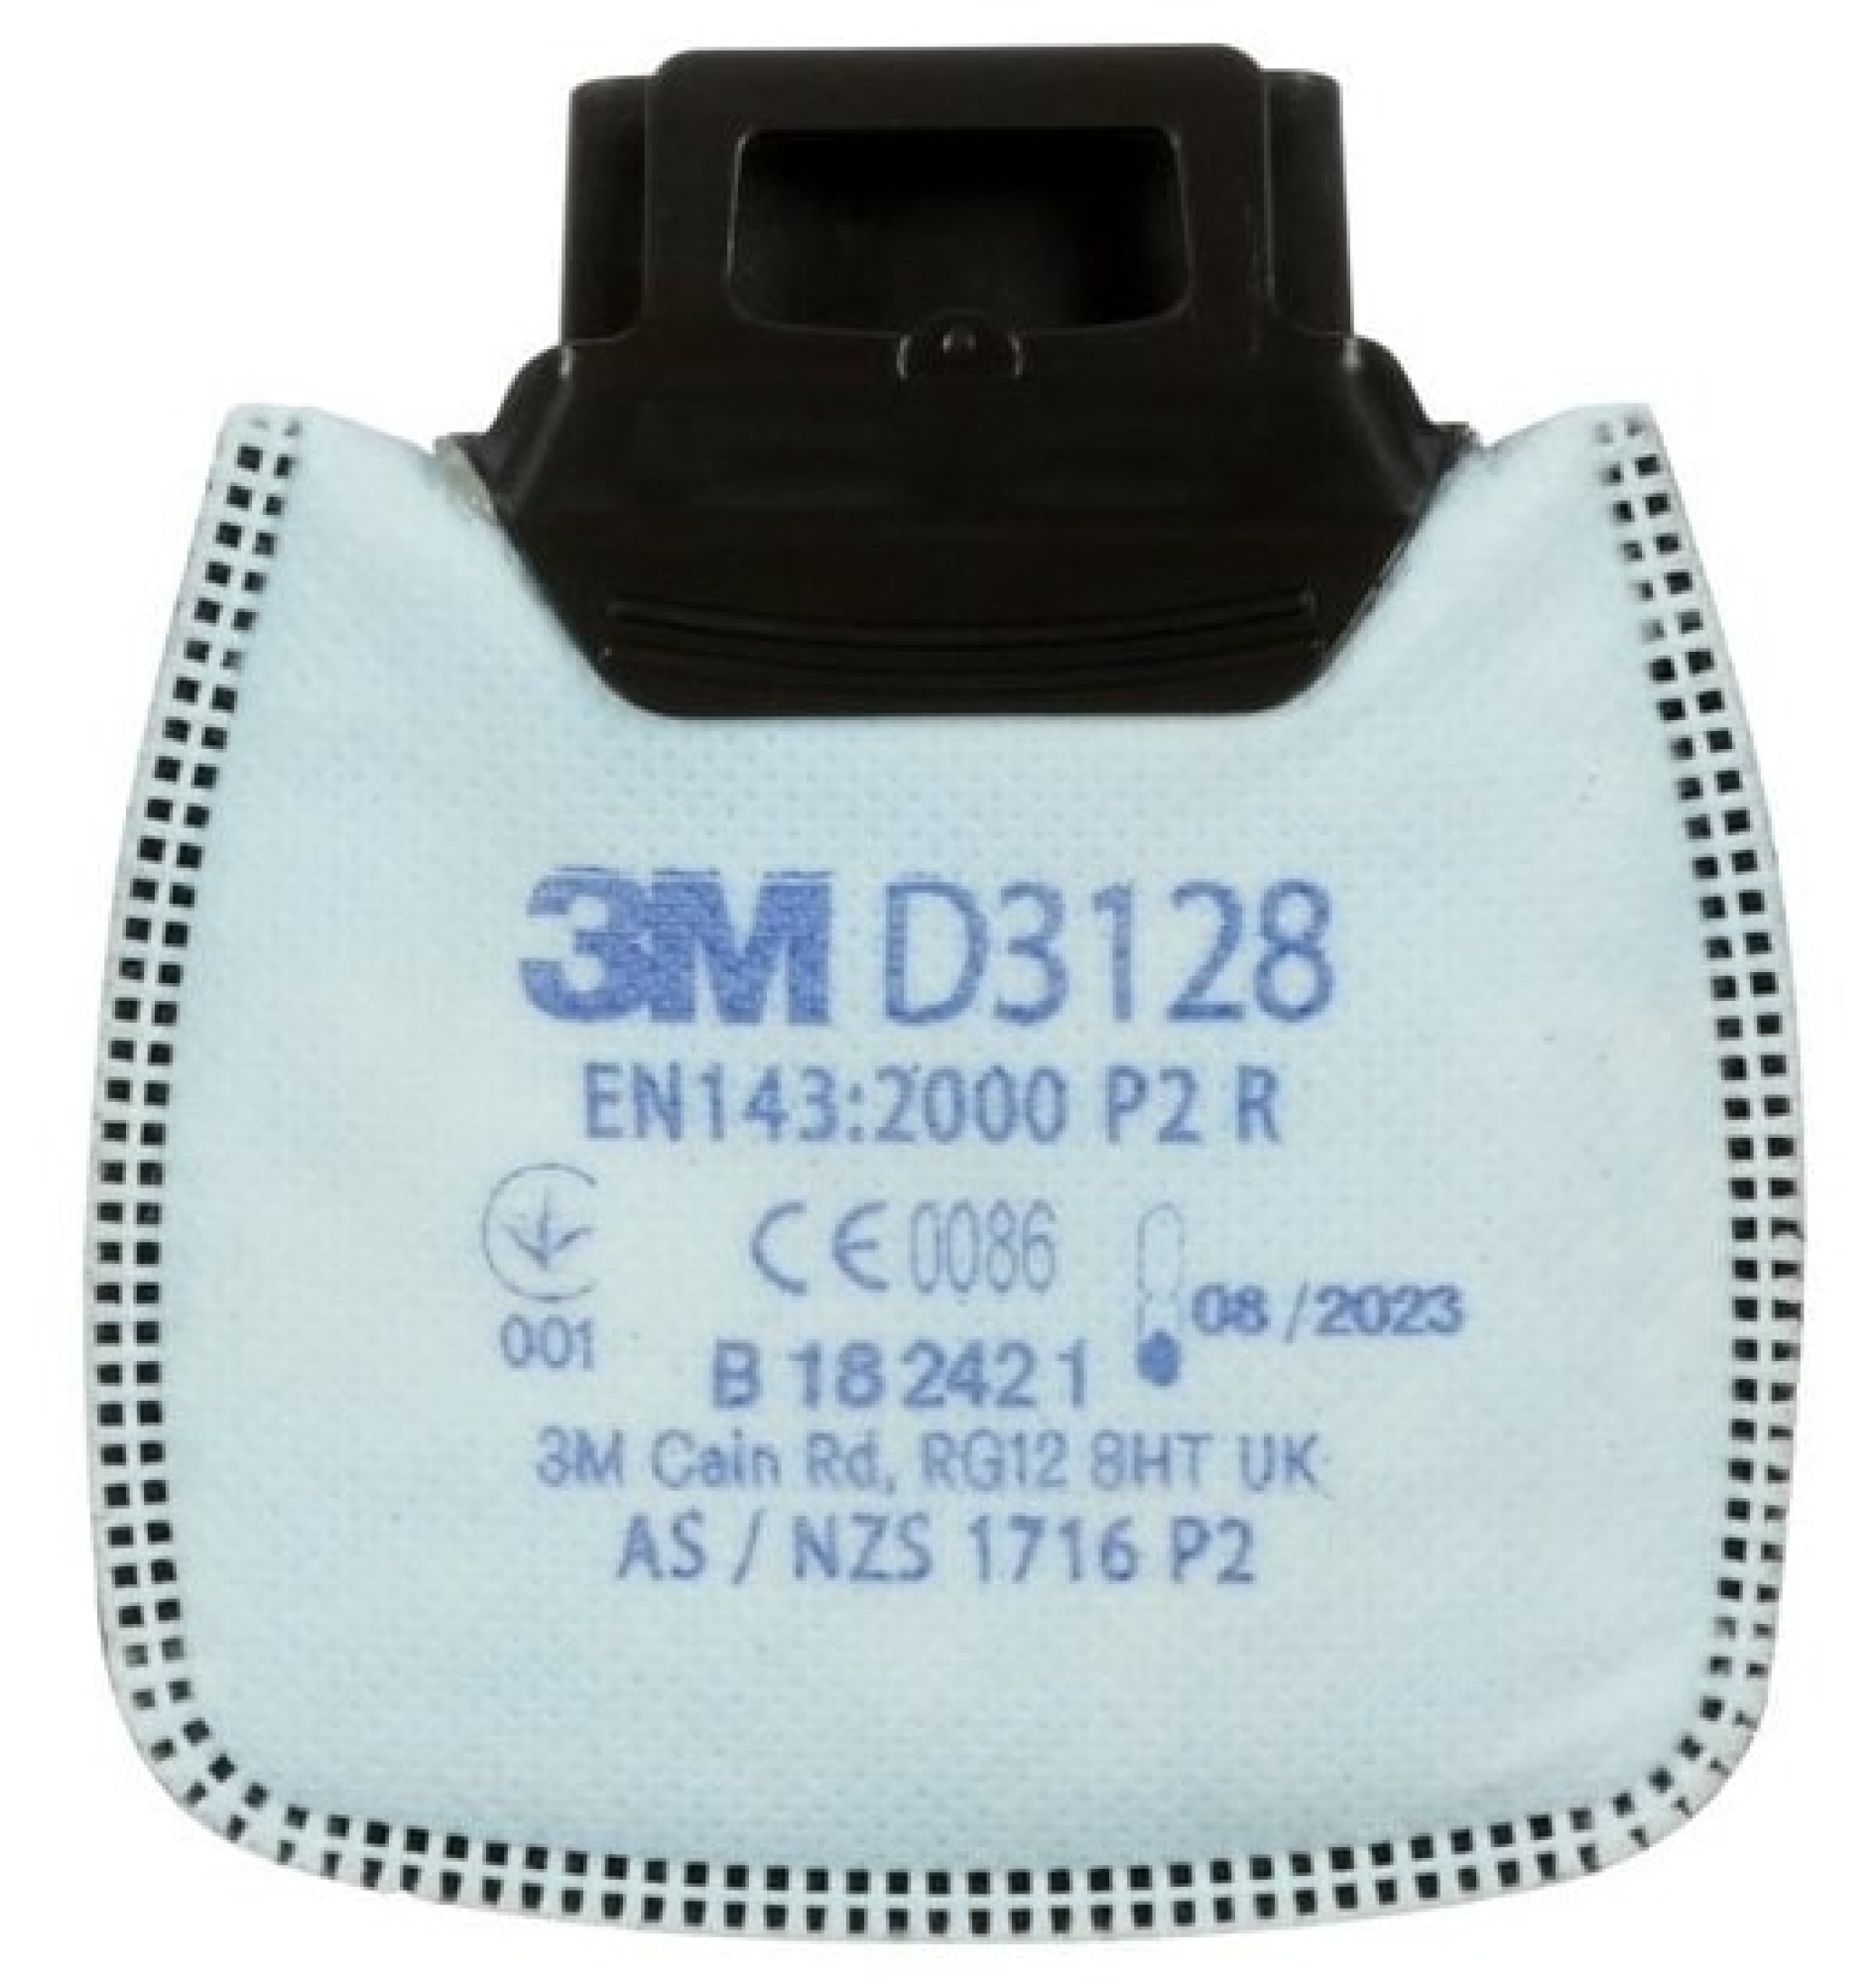 3M™ Secure Click™ Partikelfilter D3128, P2 R, Secure-Click Filteranschluss, Filter mit Aktivkohle und mit zusätzlichem Schutz gegen organische Gase & Dämpfe + HF